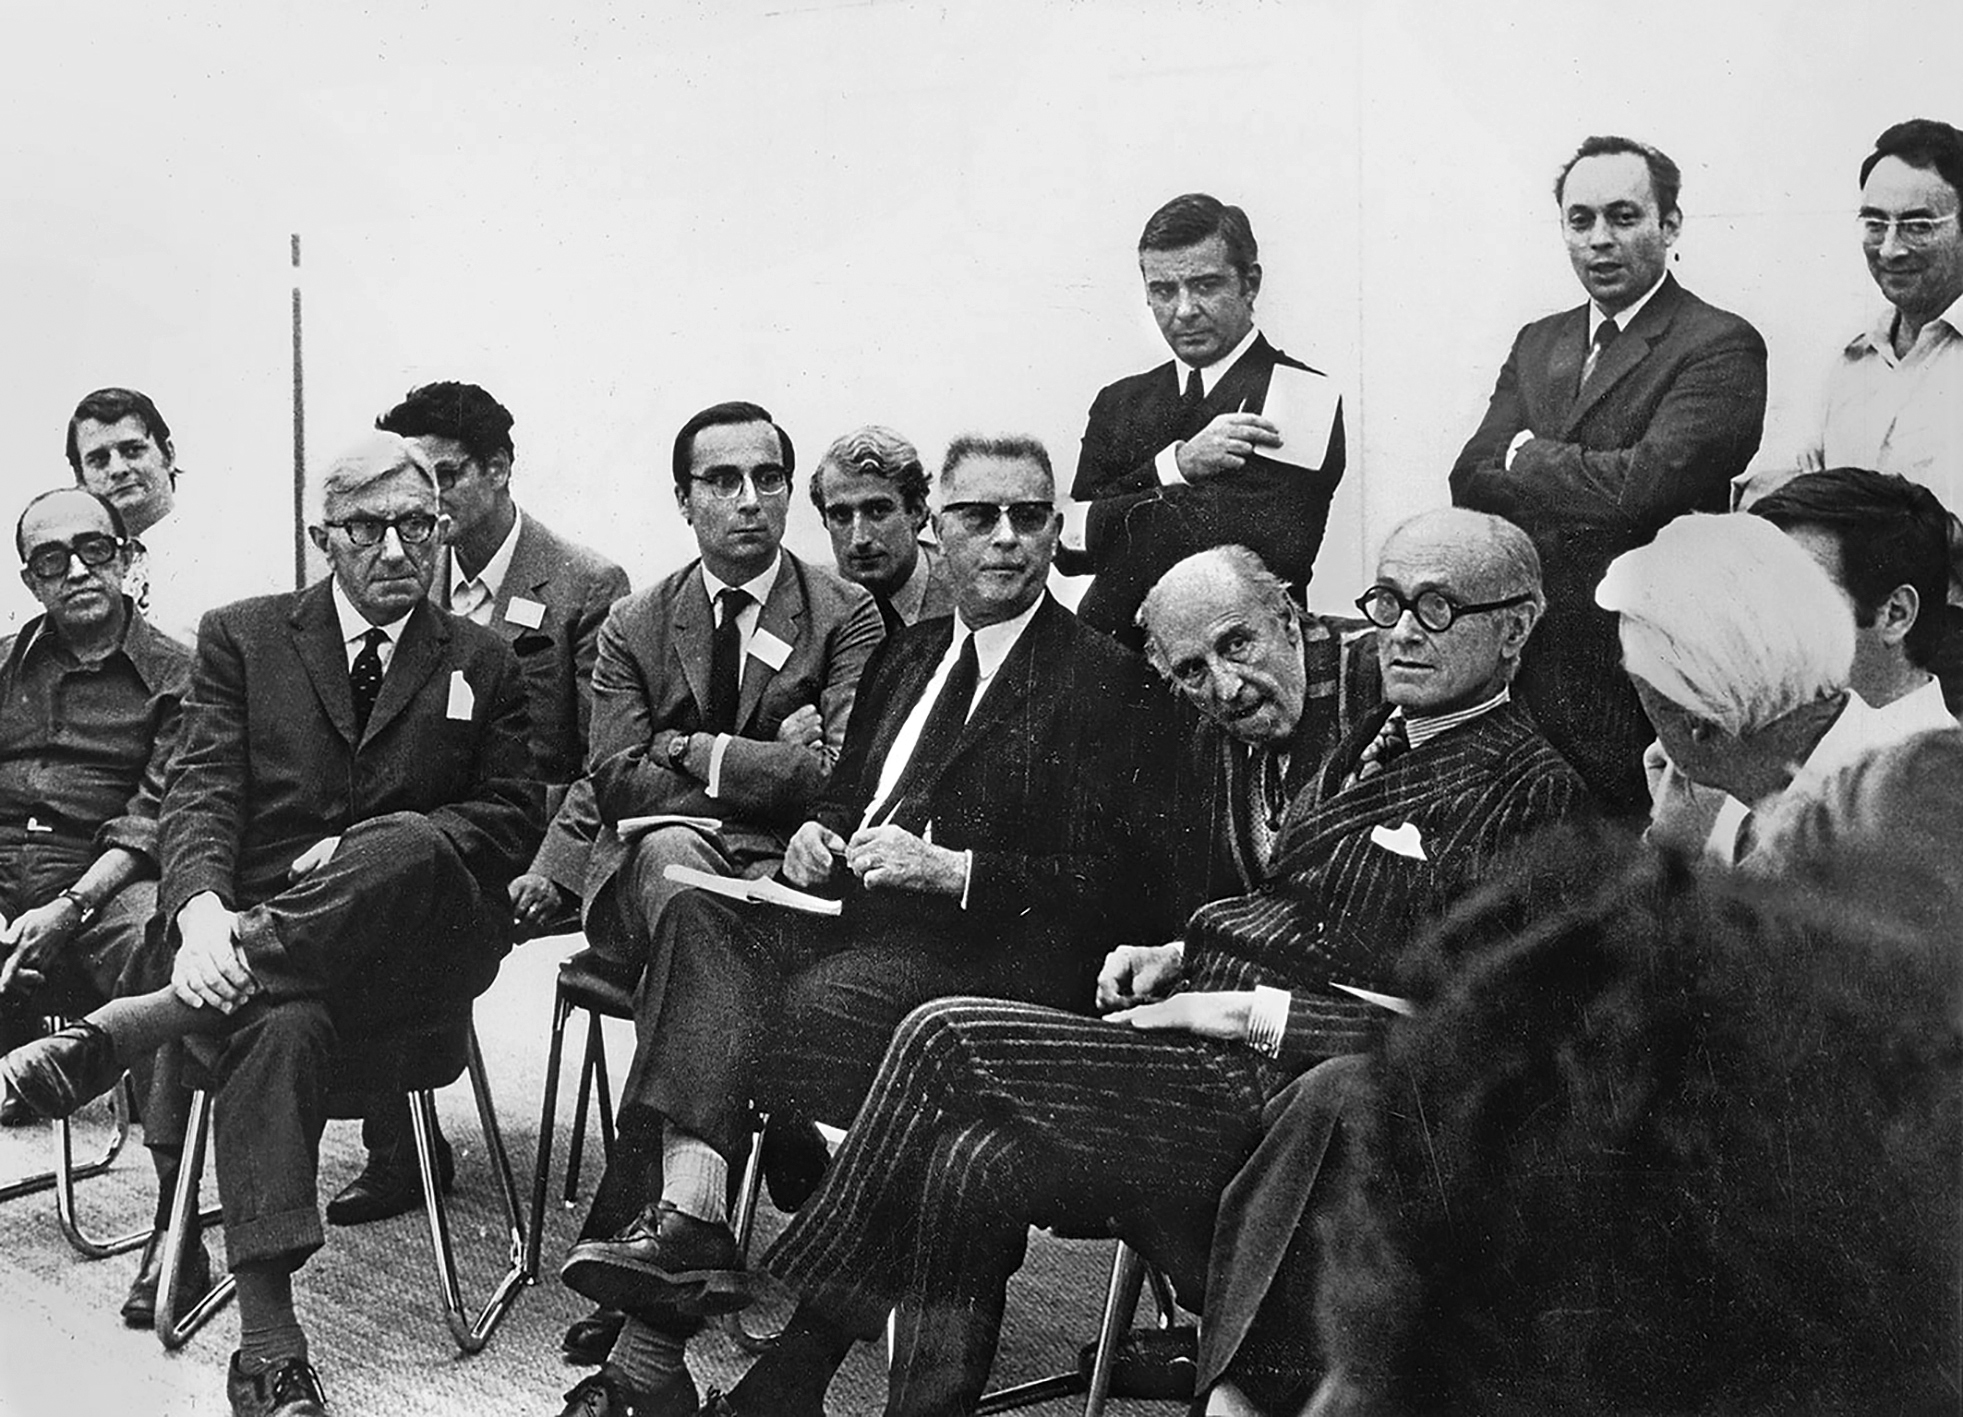 Le jury du concours international d’architecture pour le Centre Georges Pompidou présidé par Jean Prouvé, 1971.